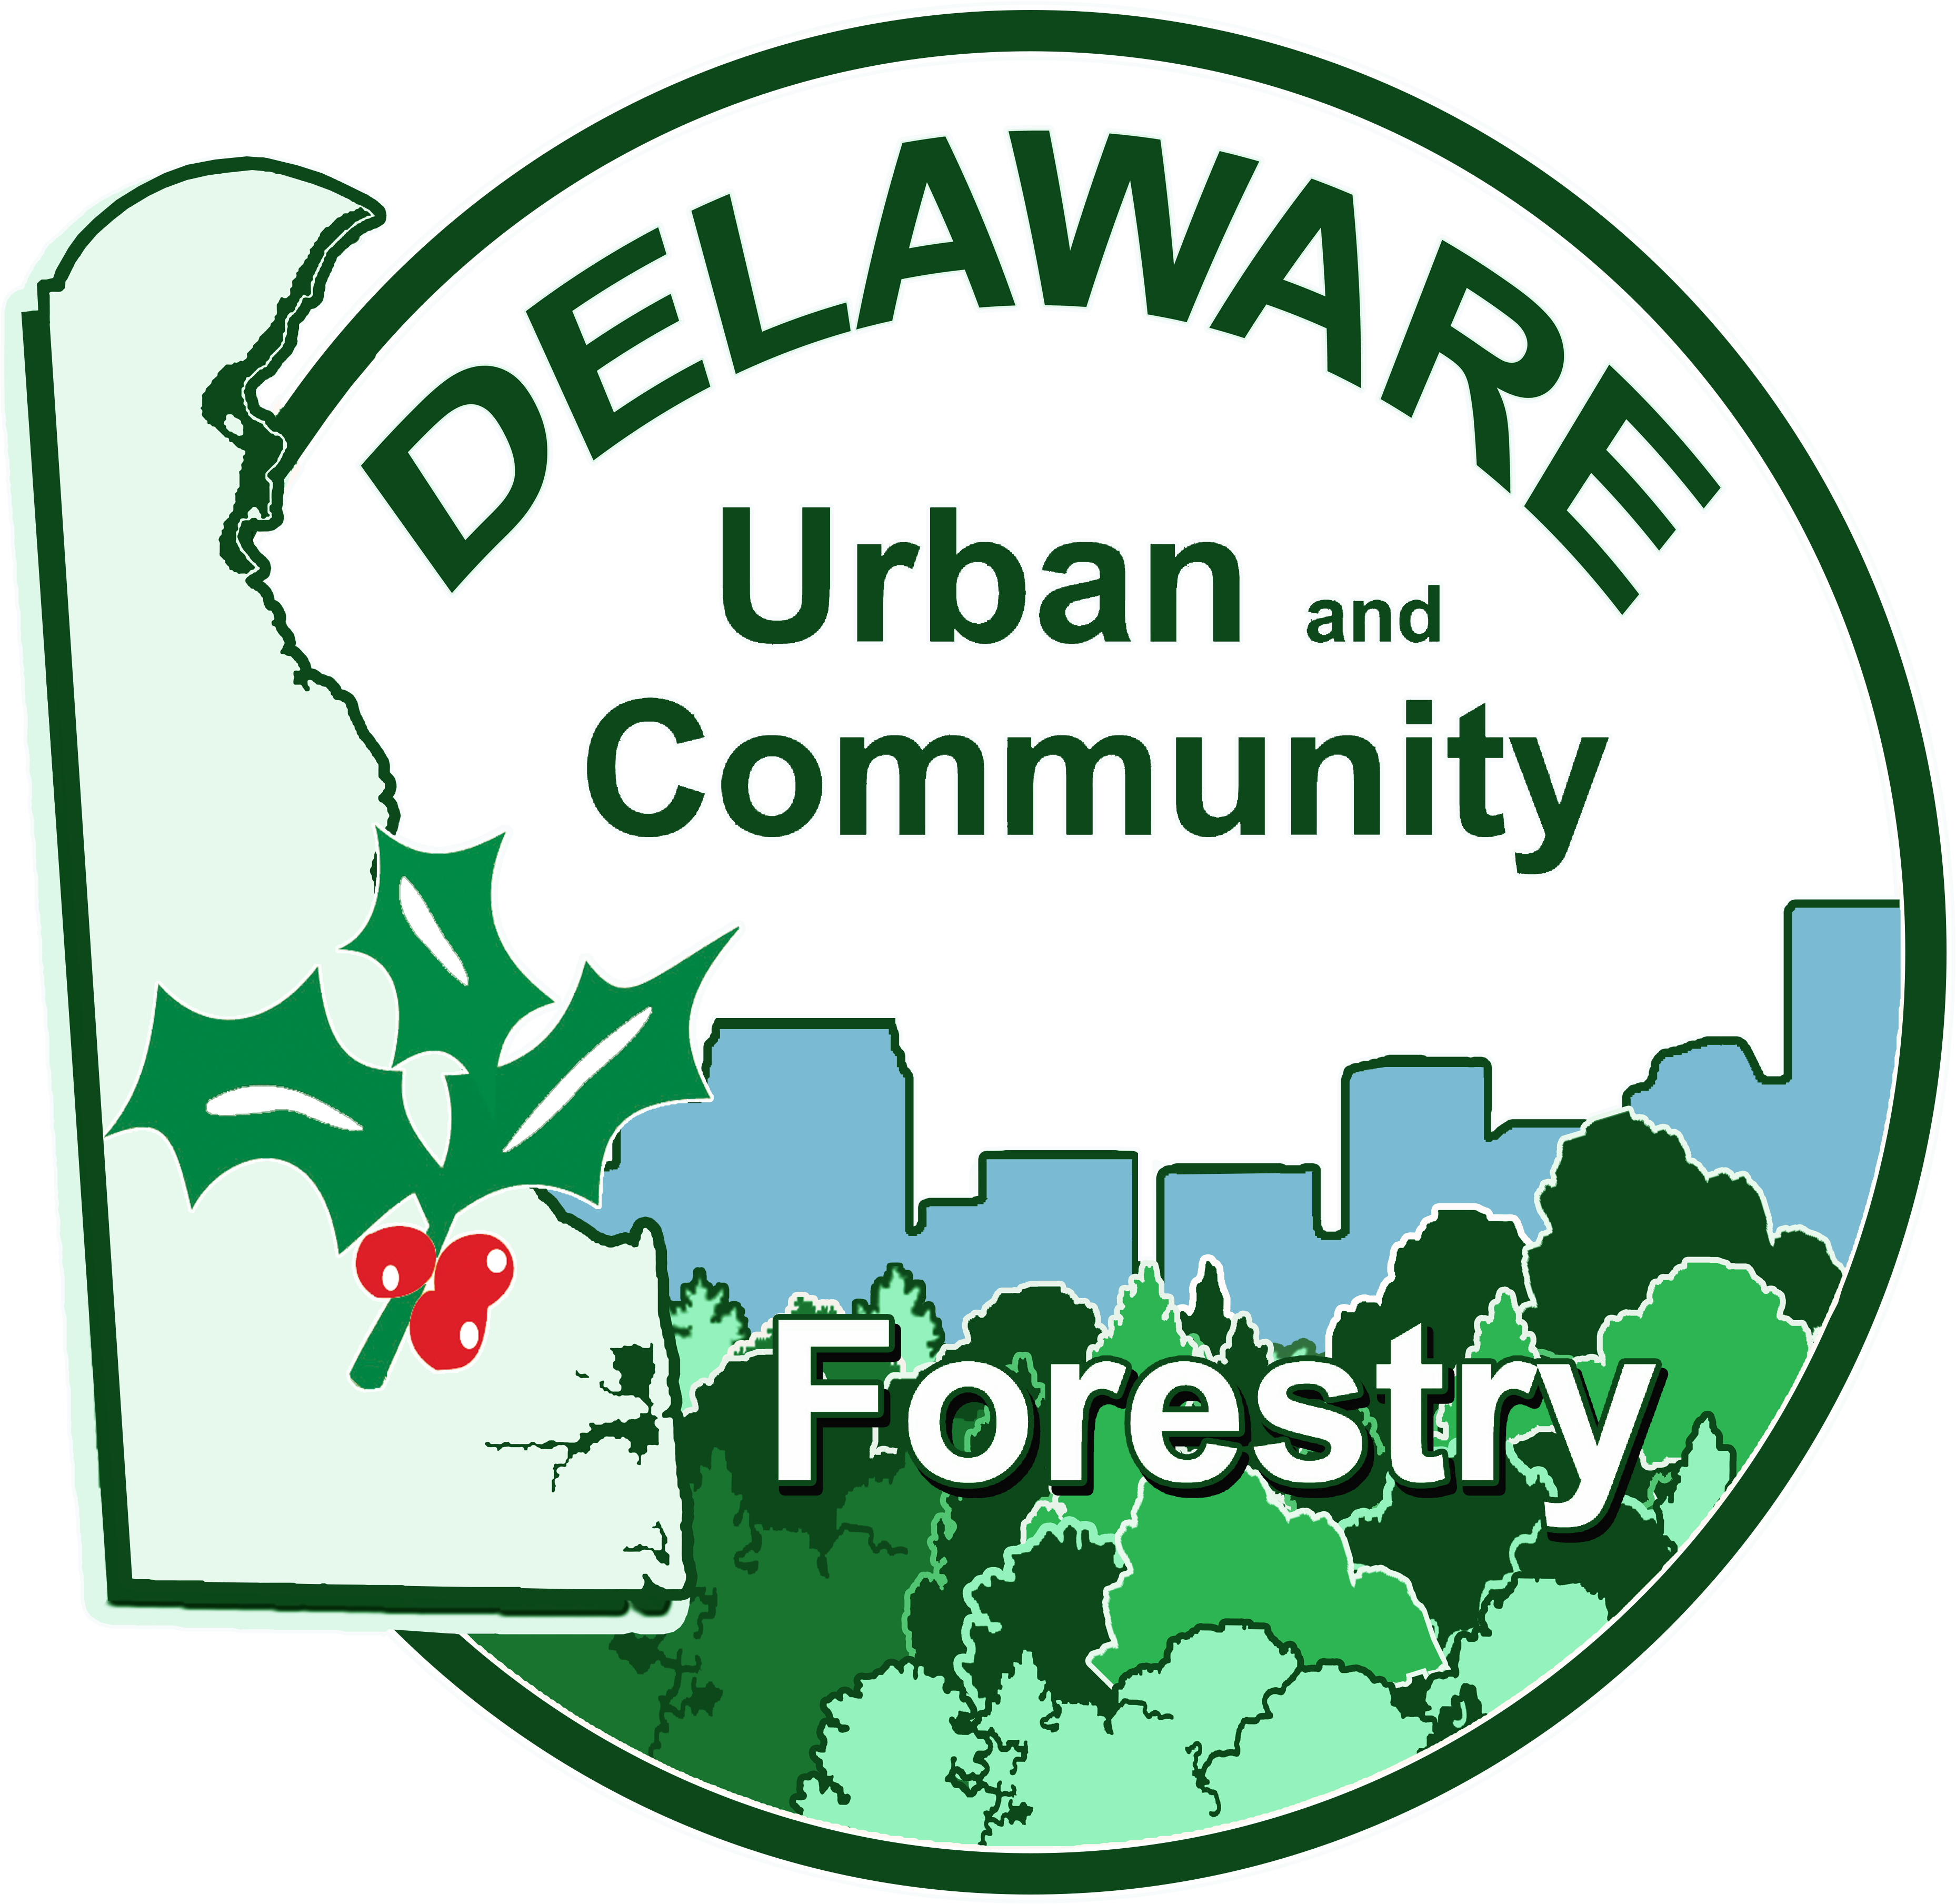 6th Annual Delaware Arborist & Tree Care Seminar Will - Gross Receipts Tax (3968x3972)